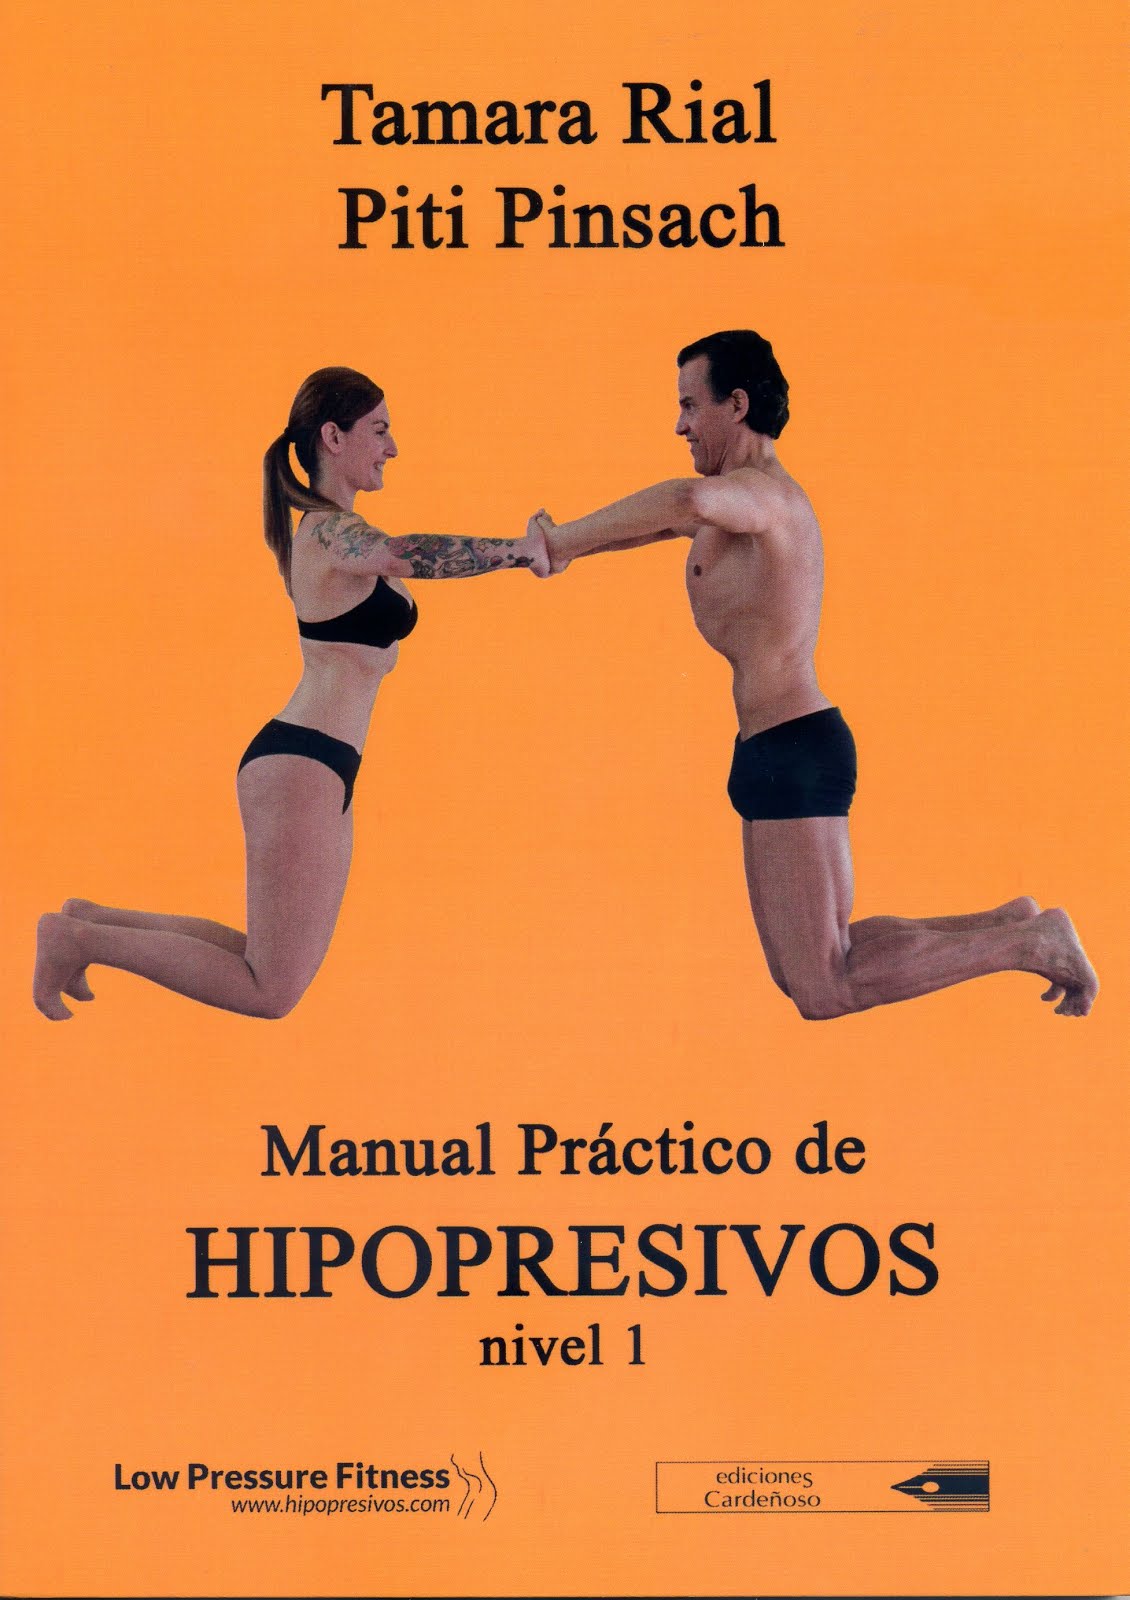 "MANUAL PRÁCTICO DE HIPOPRESIVOS  - NIVEL 1"